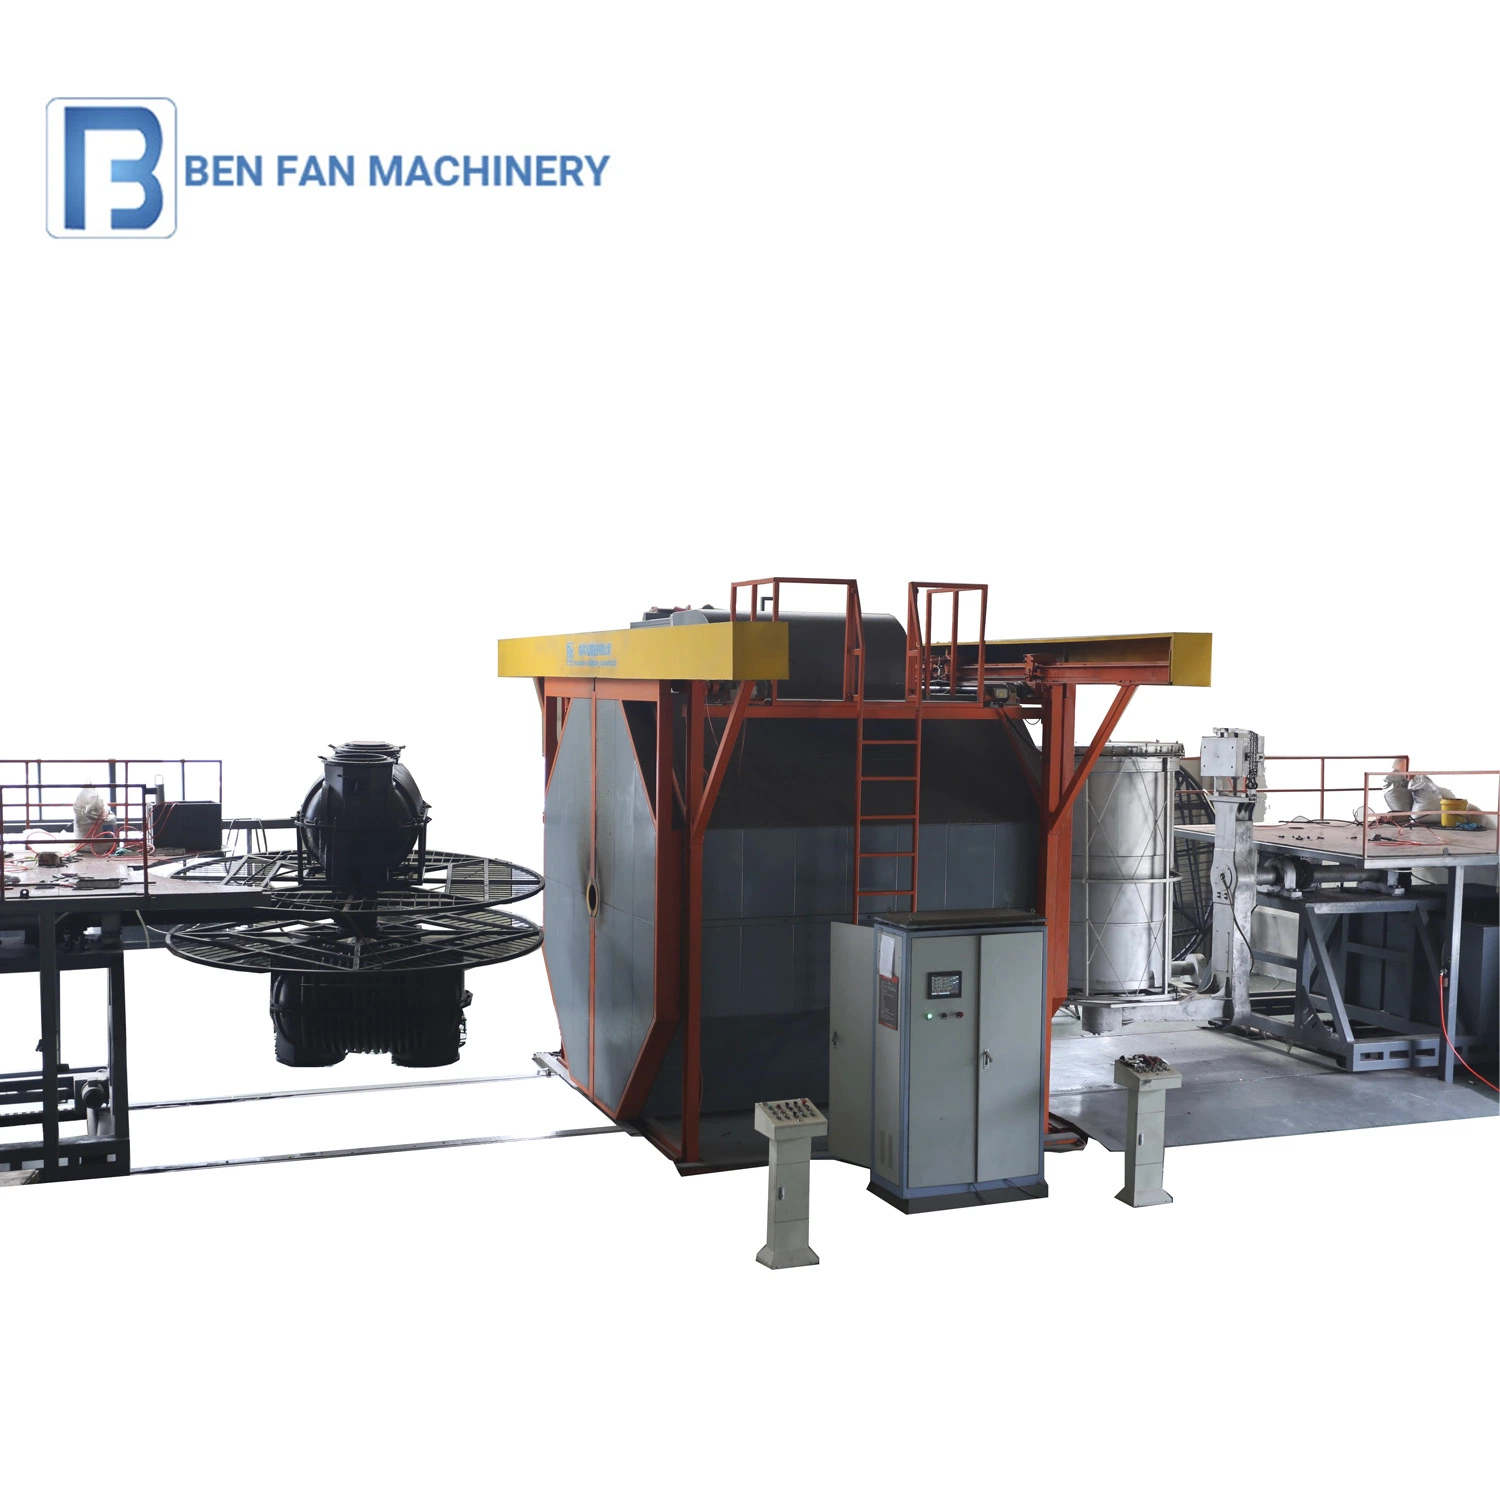 Máquina de moldeo rotacional para fabricación de productos de plástico, máquina de rotomoldeo para tanques de agua, máquinas de moldeo de plástico manuales.